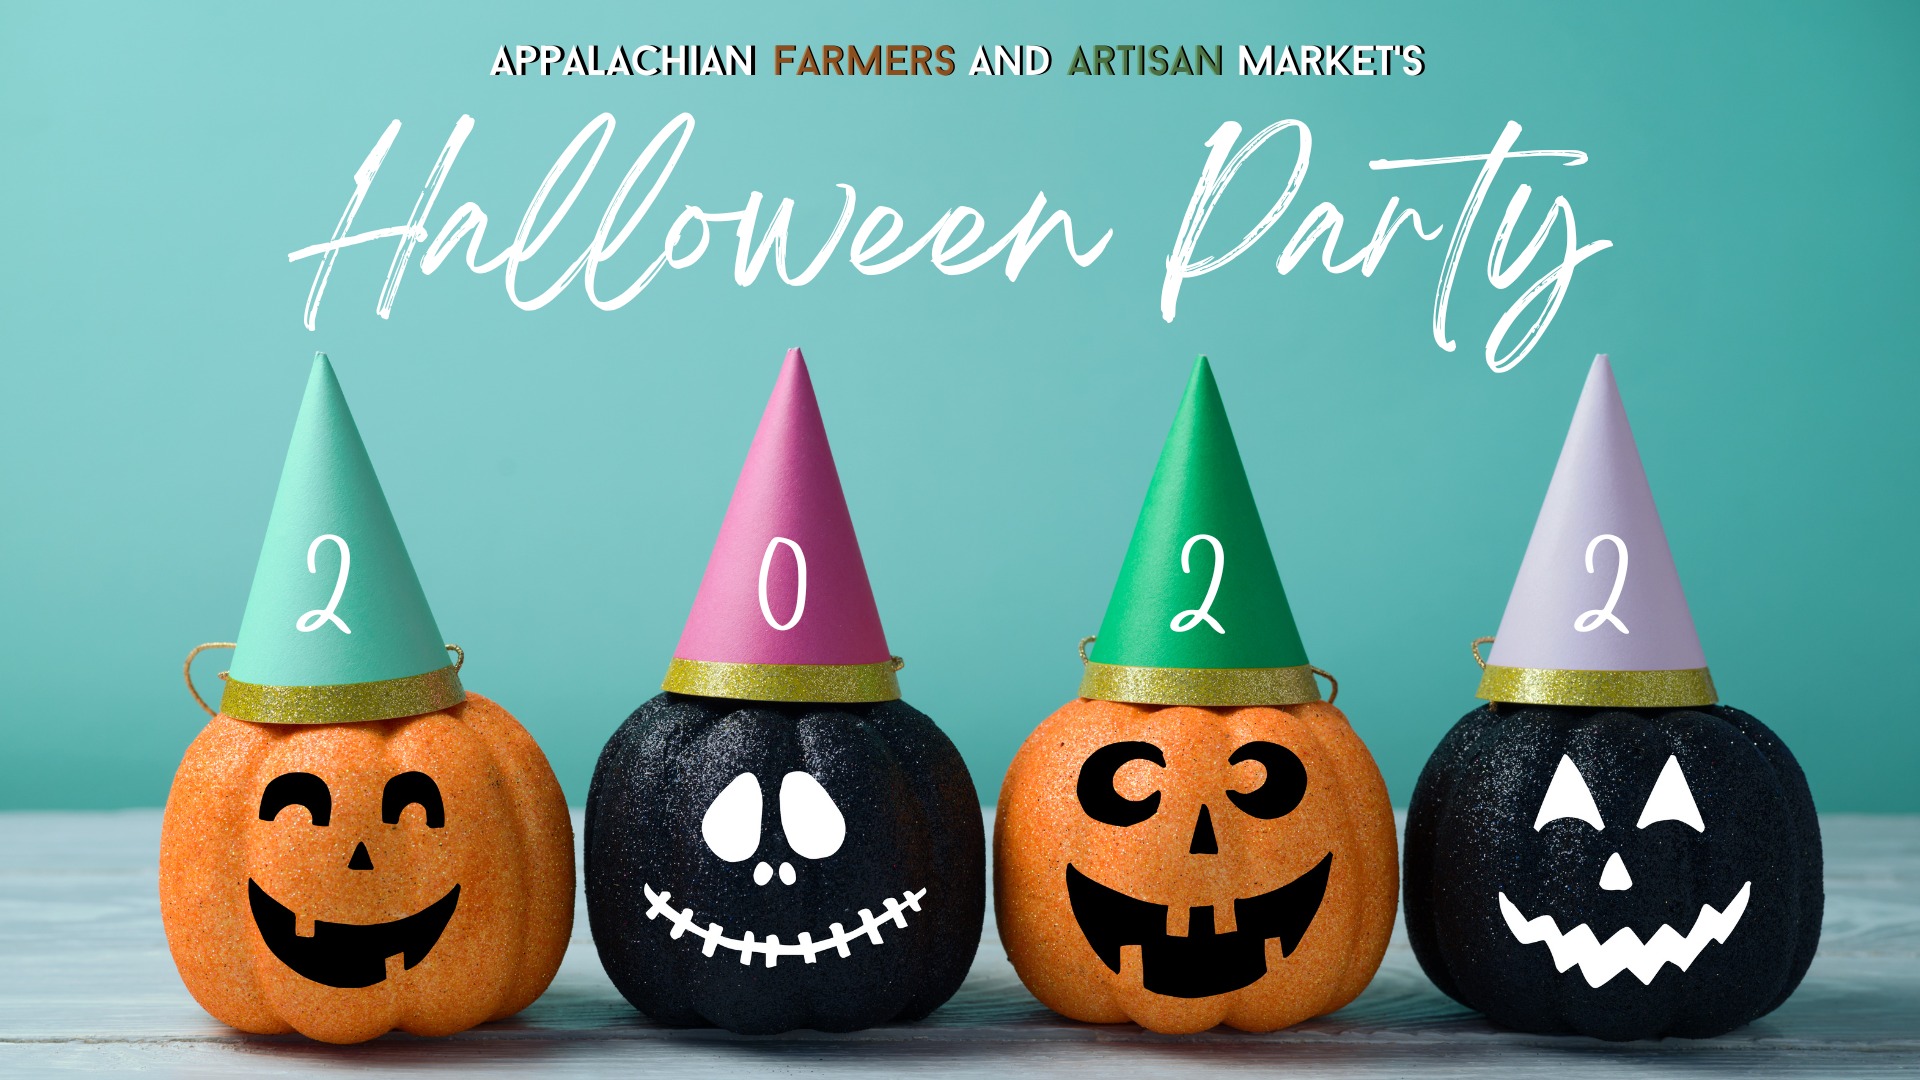 AFAM's Halloween Party Market